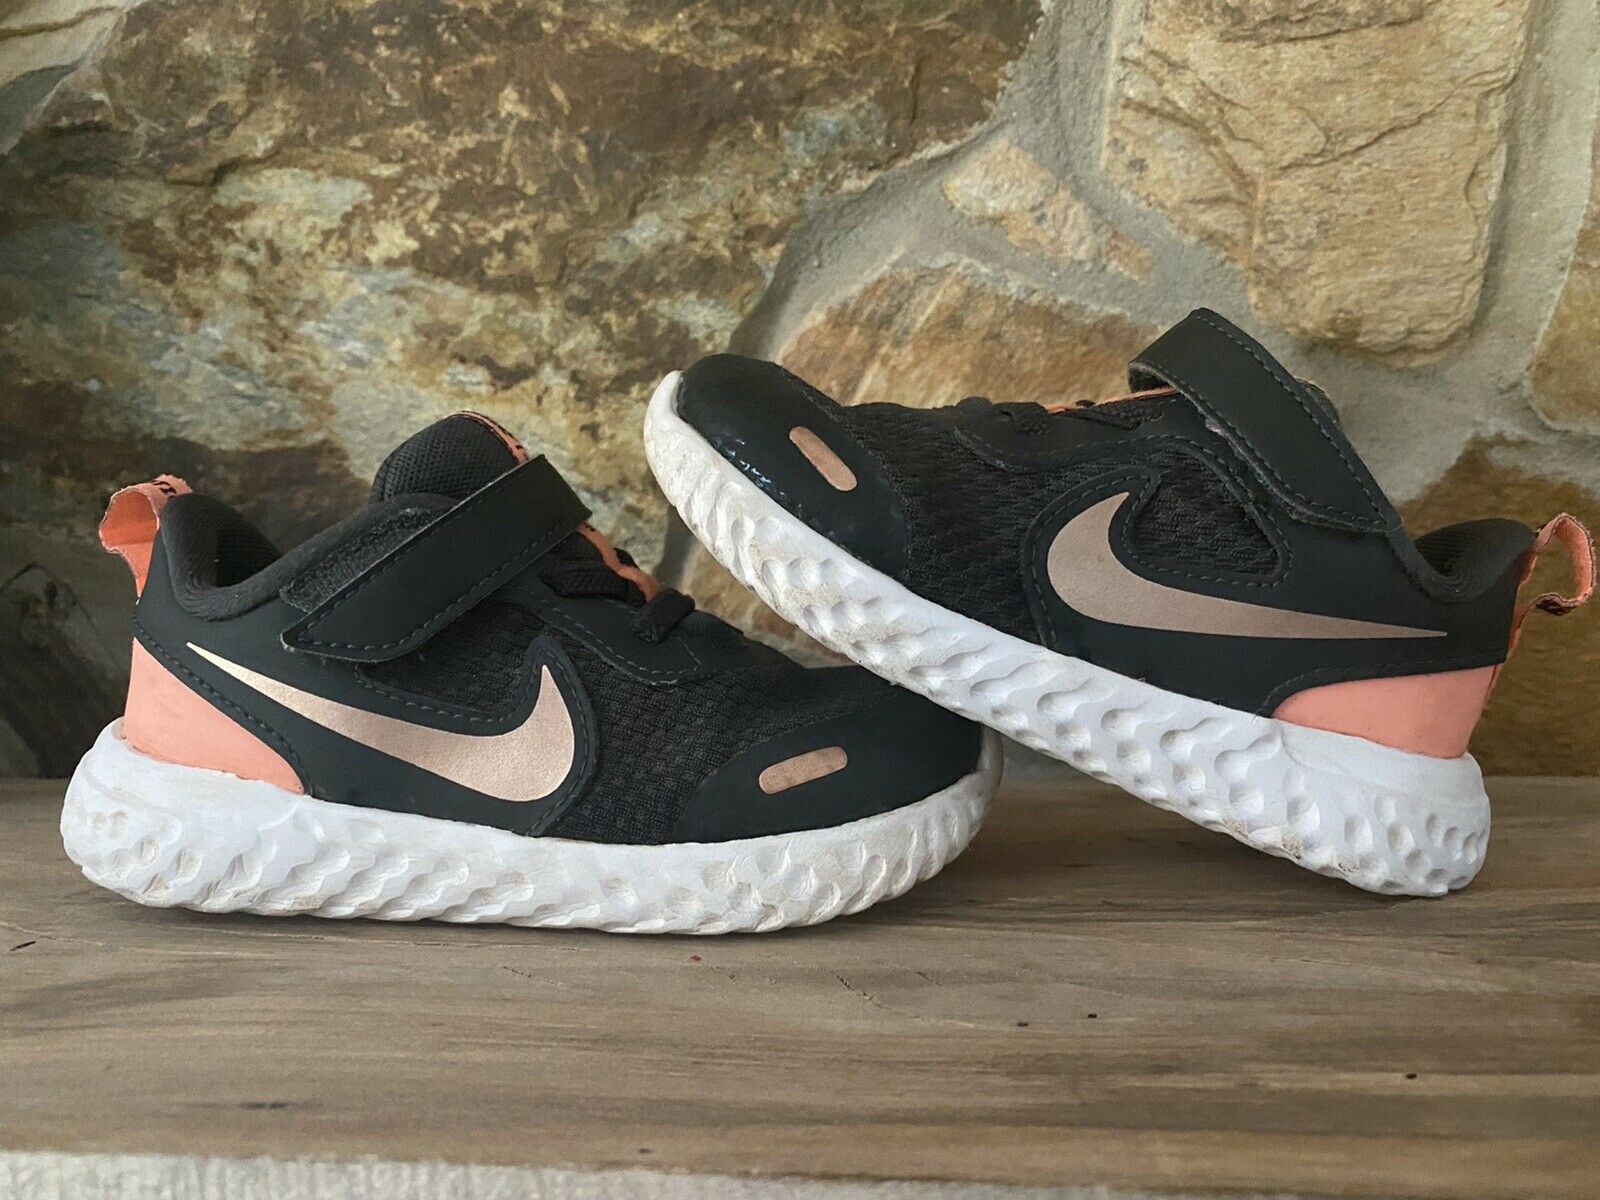 Nike 8C Girls Toddler Shoe Sneakers Black Coral Black Size 8